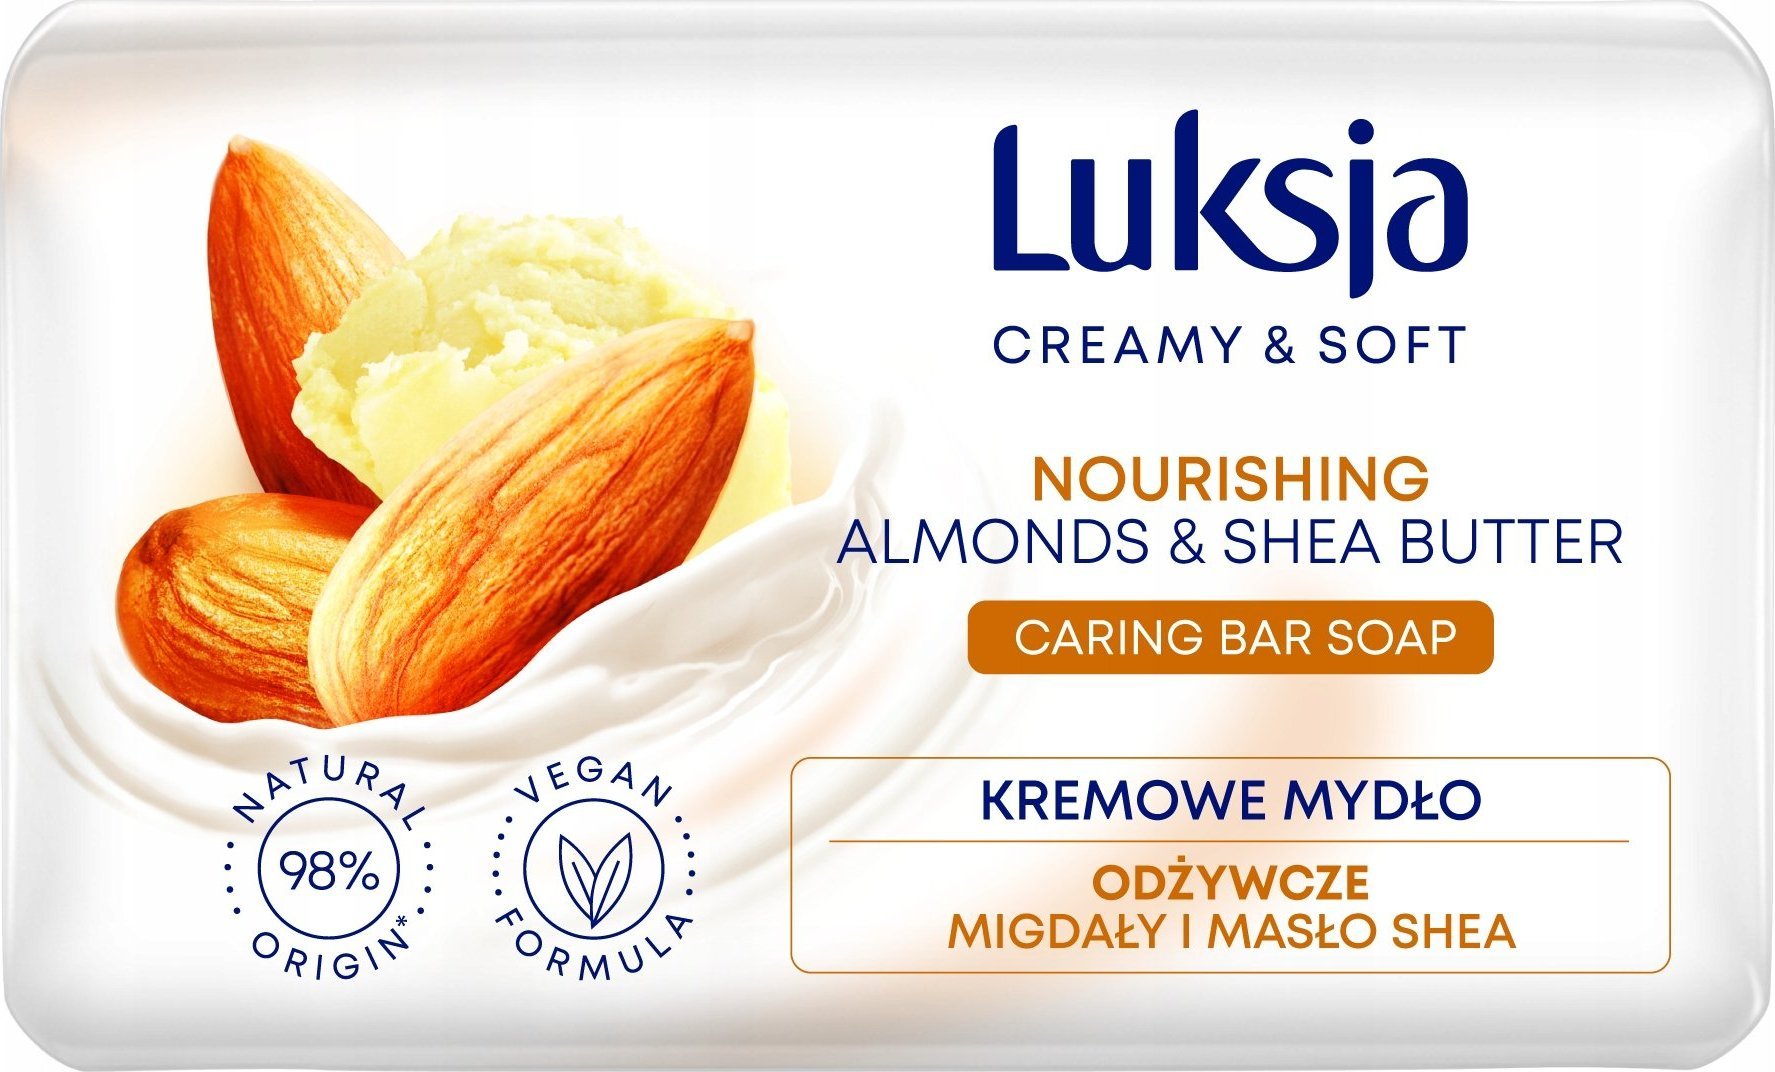 Sarantis Luksja Creamy & Soft Odzywcze Kremowe Mydlo w kostce Migdaly & Maslo Shea 90g 628766 (5900536348766)